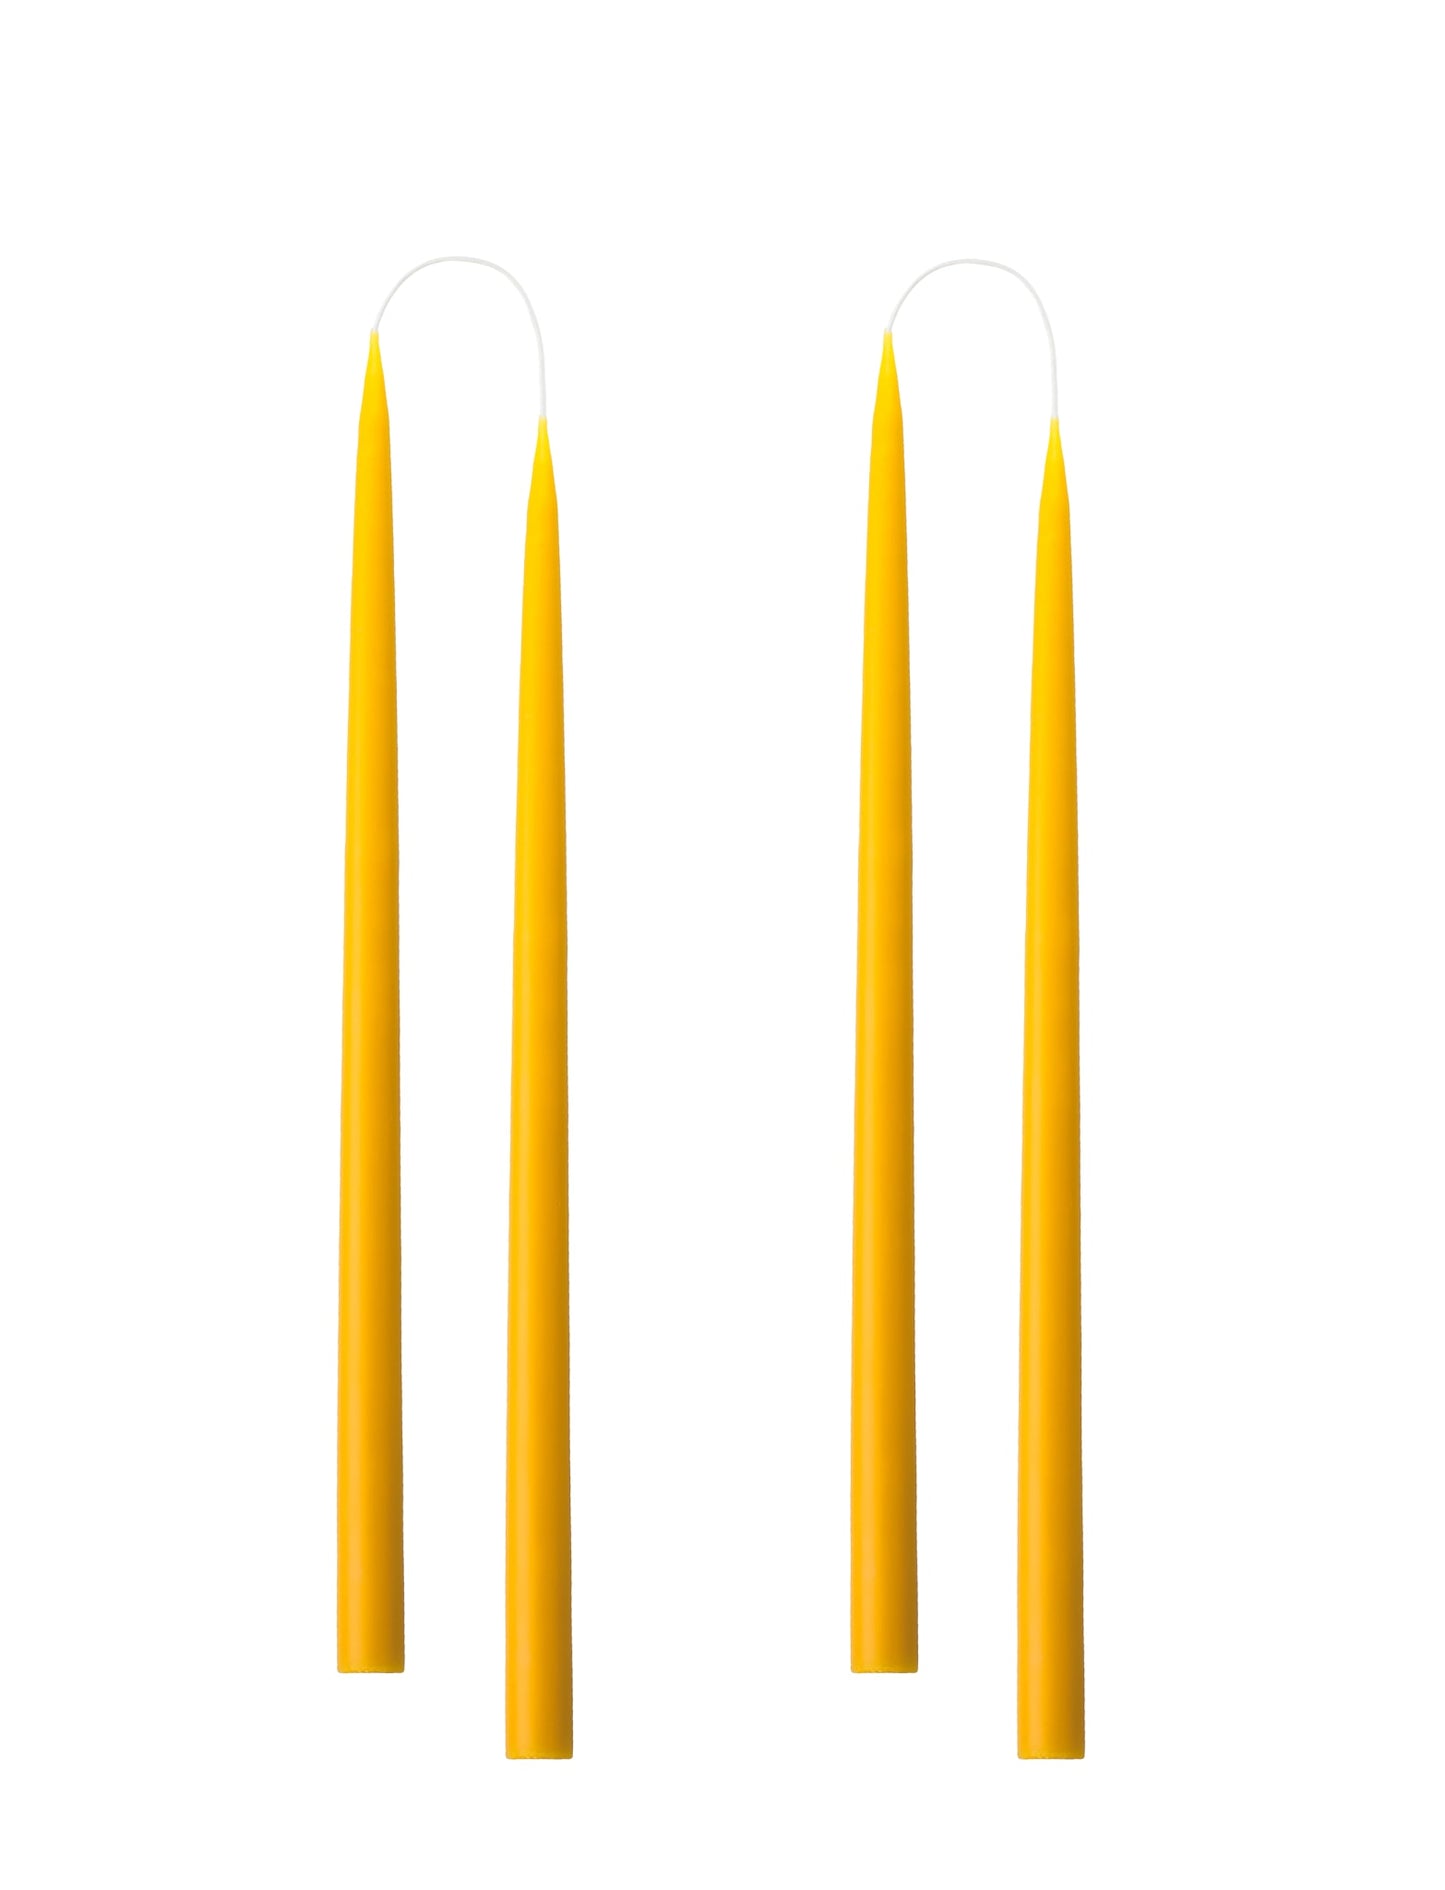 Von Hand getauchte, gefärbte Kerze, im 4er-Pack – 2,2 x 35 cm – Gelb #51